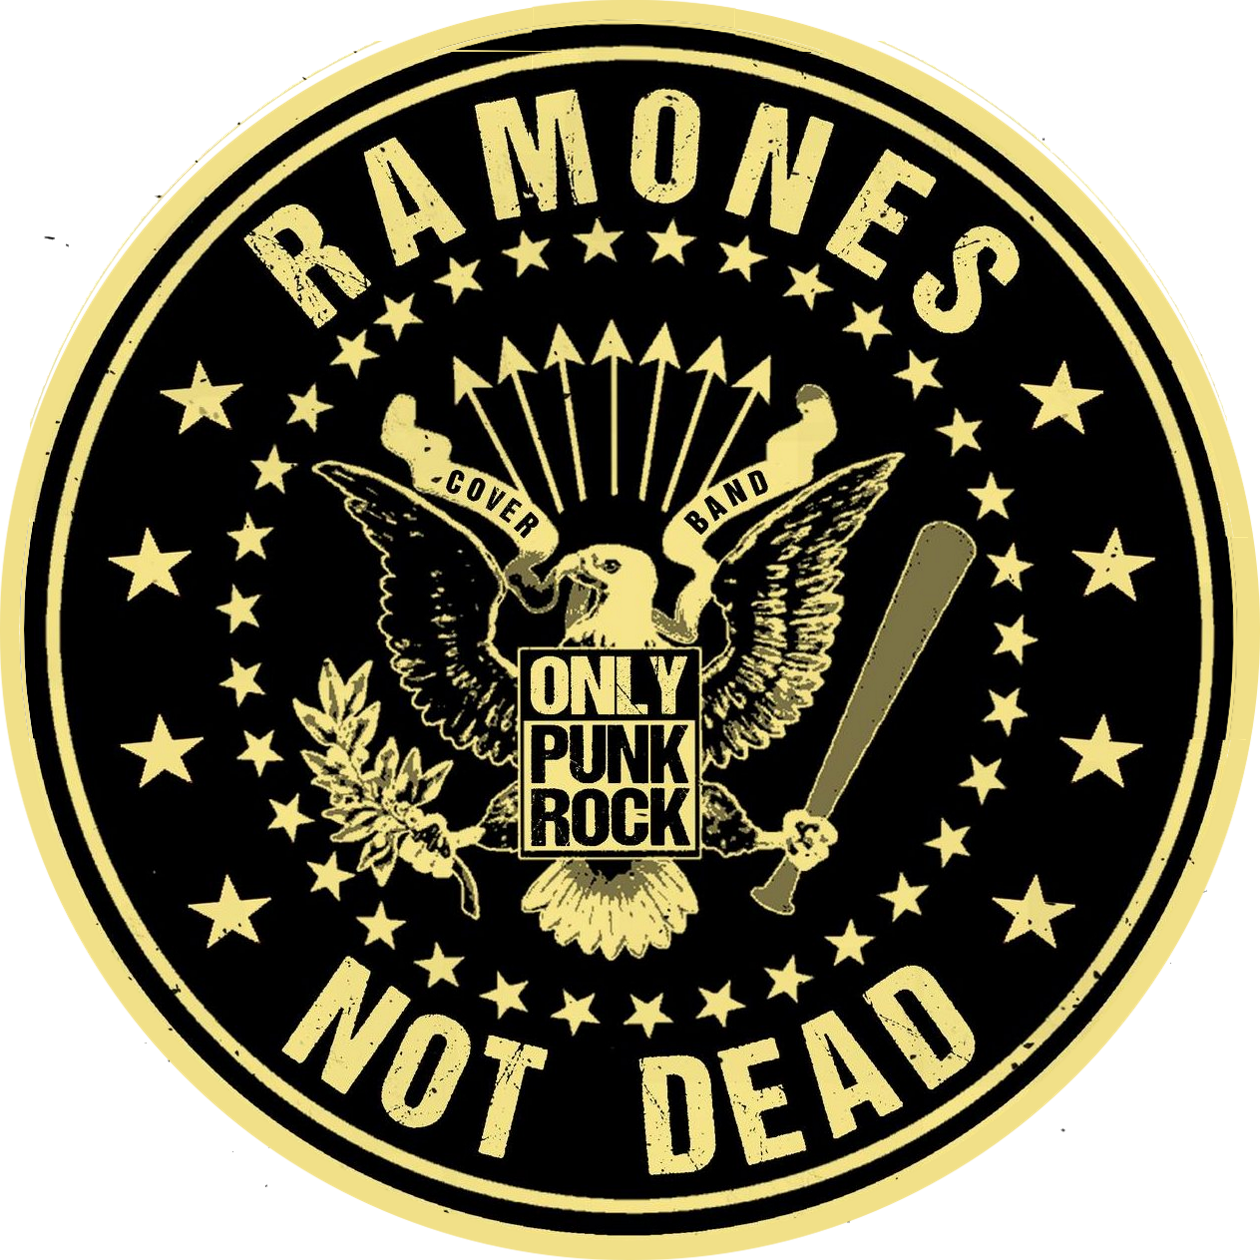 RAMONES NOT DEAD